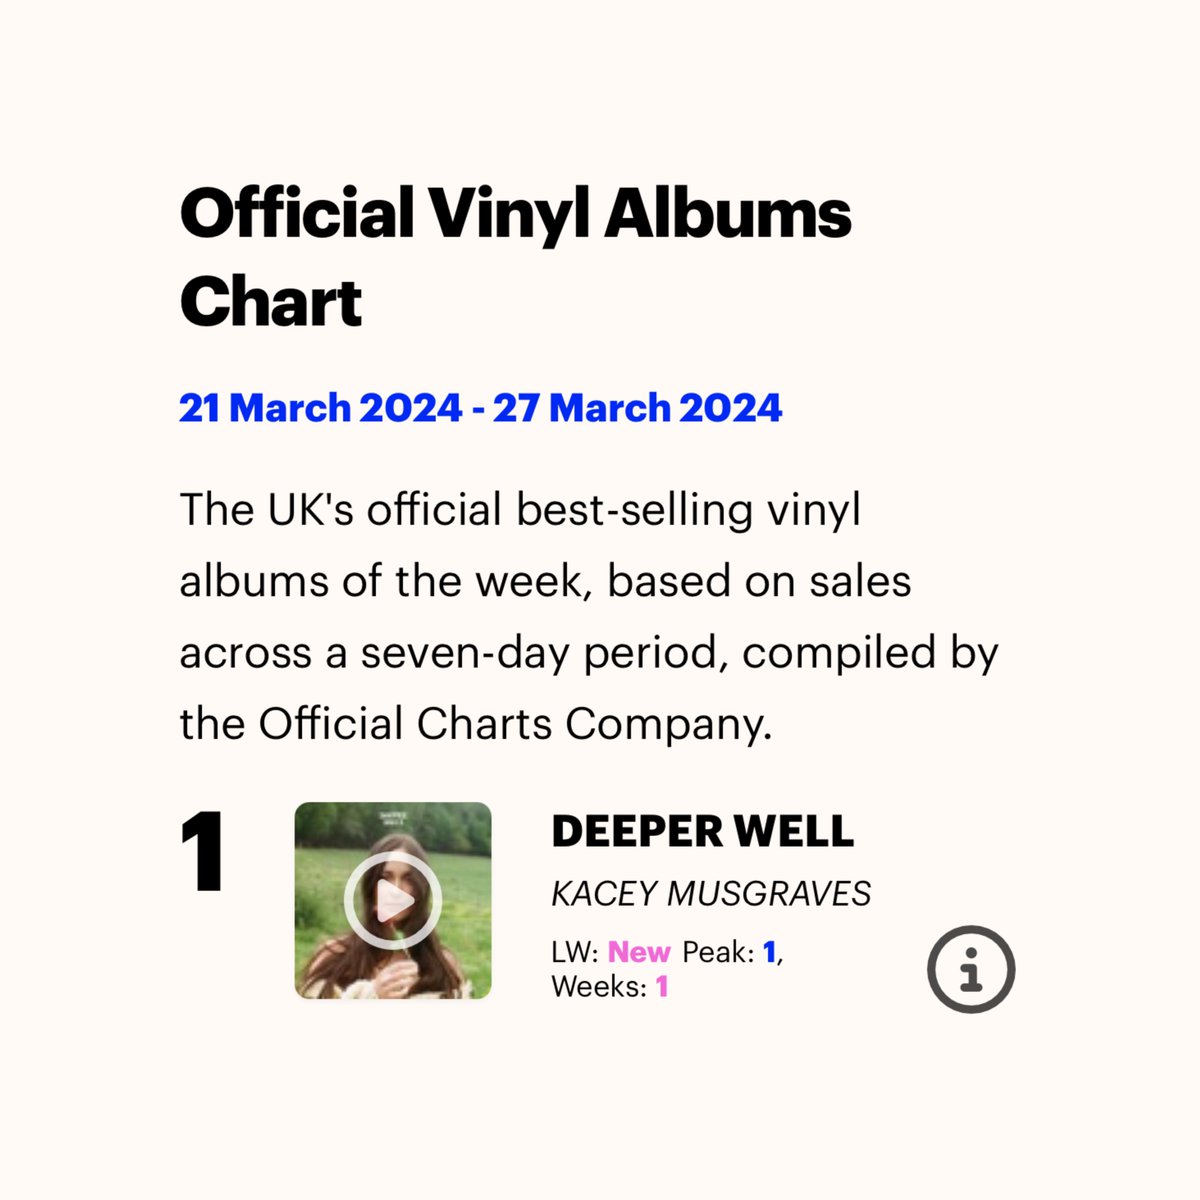 Kacey Musgraves’ “Deeper Well” was the #1 best-selling vinyl album in the UK last week.